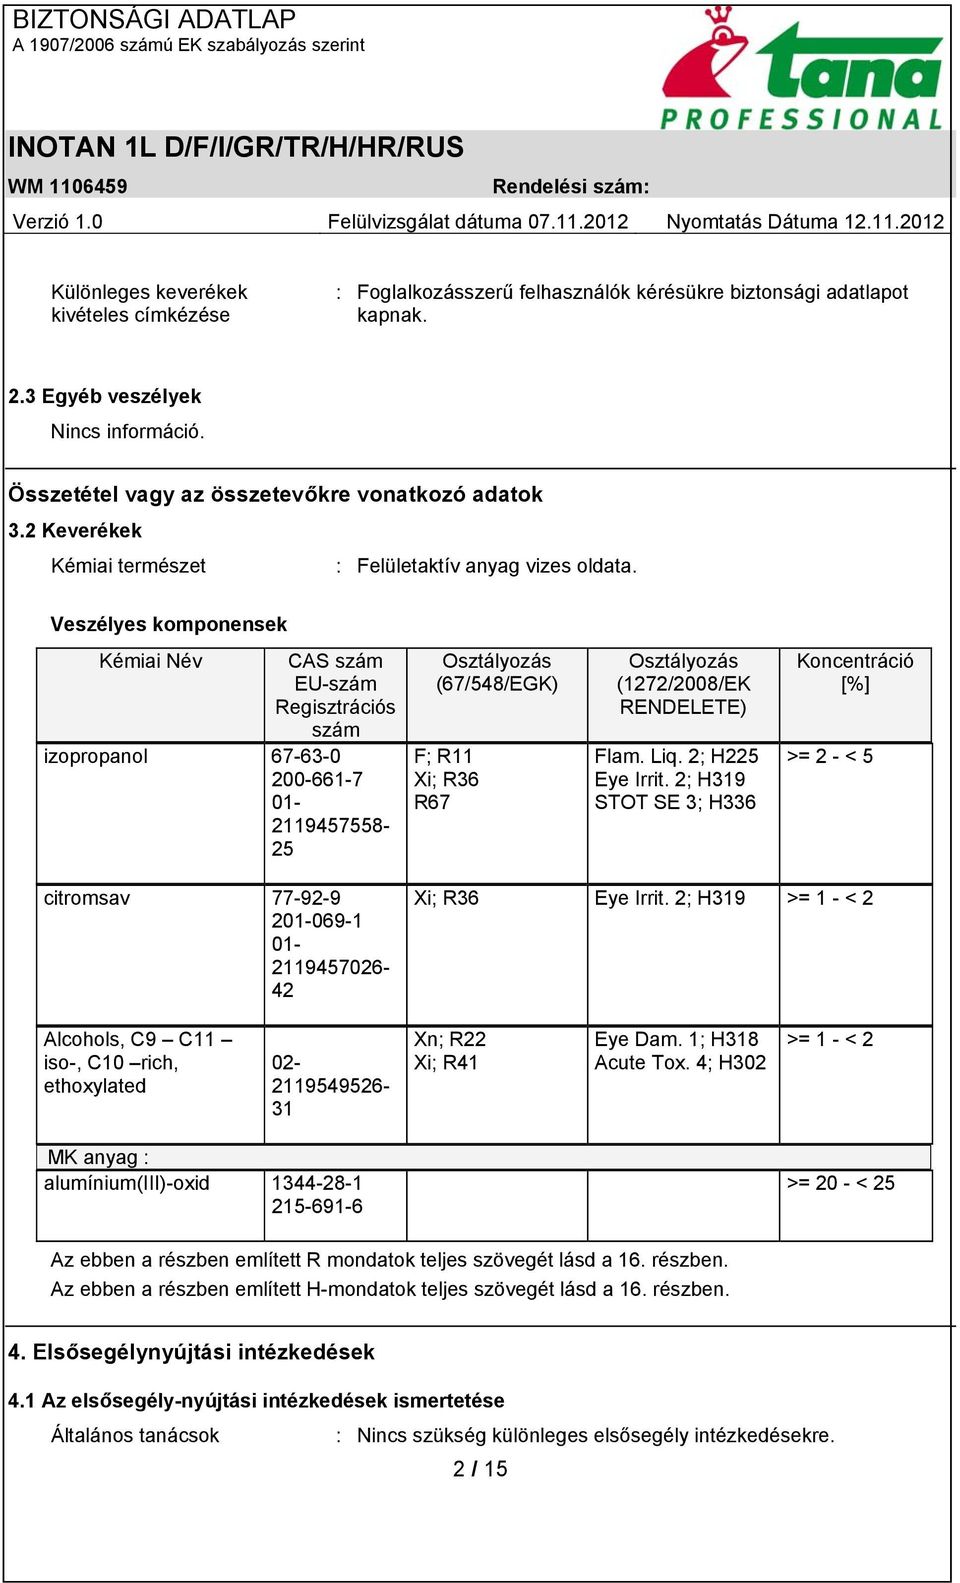 Veszélyes komponensek Kémiai Név CAS szám EU-szám Regisztrációs szám izopropanol 67-63-0 200-661-7 01-2119457558- 25 Osztályozás (67/548/EGK) F; R11 Xi; R36 R67 Osztályozás (1272/2008/EK RENDELETE)